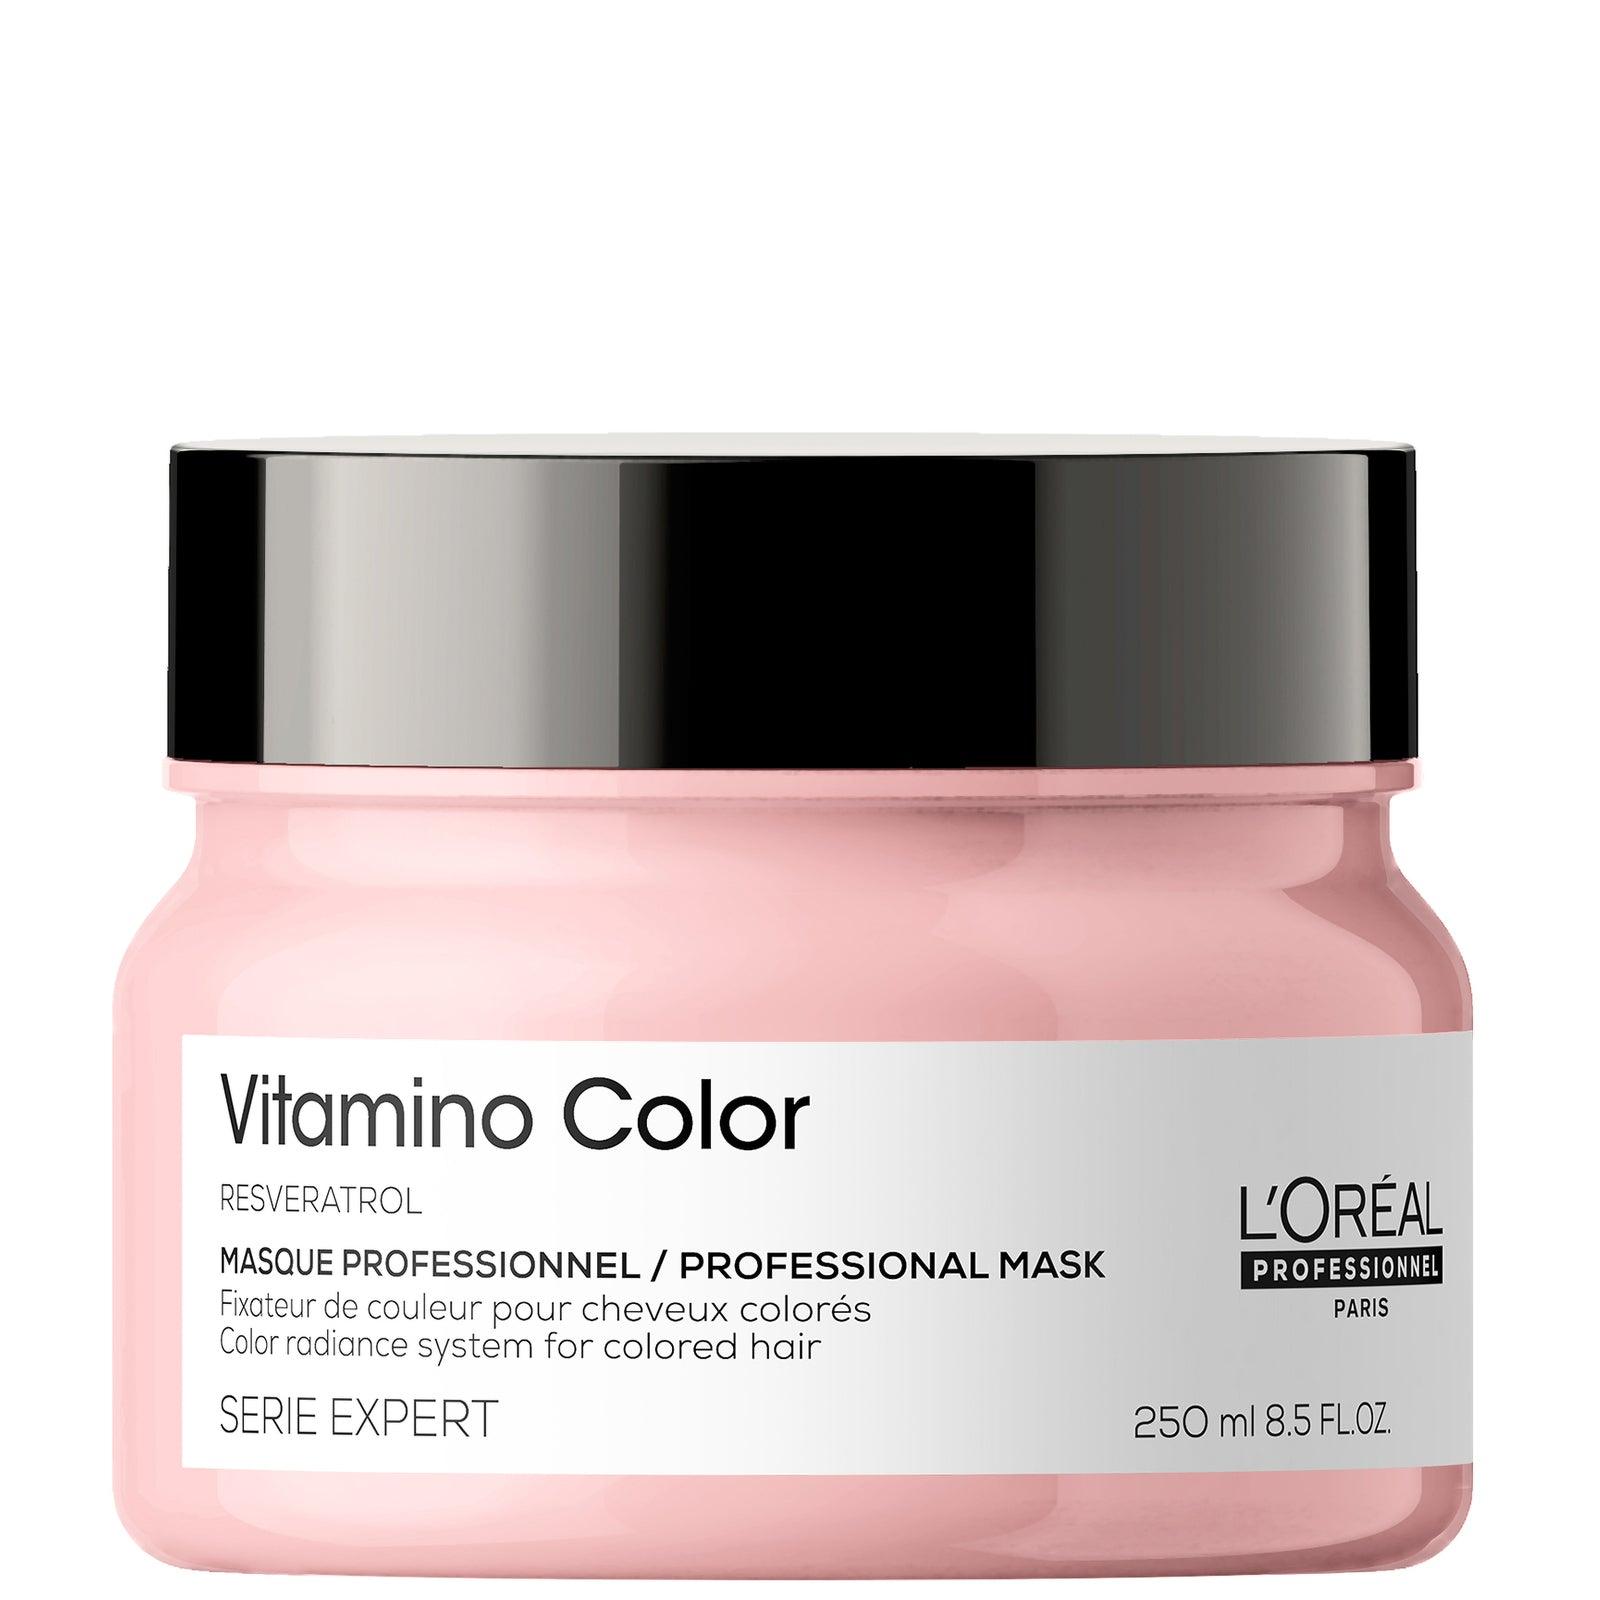 L'Oréal Professionnel Vitamino Color Mask 250ml - L'Oreal